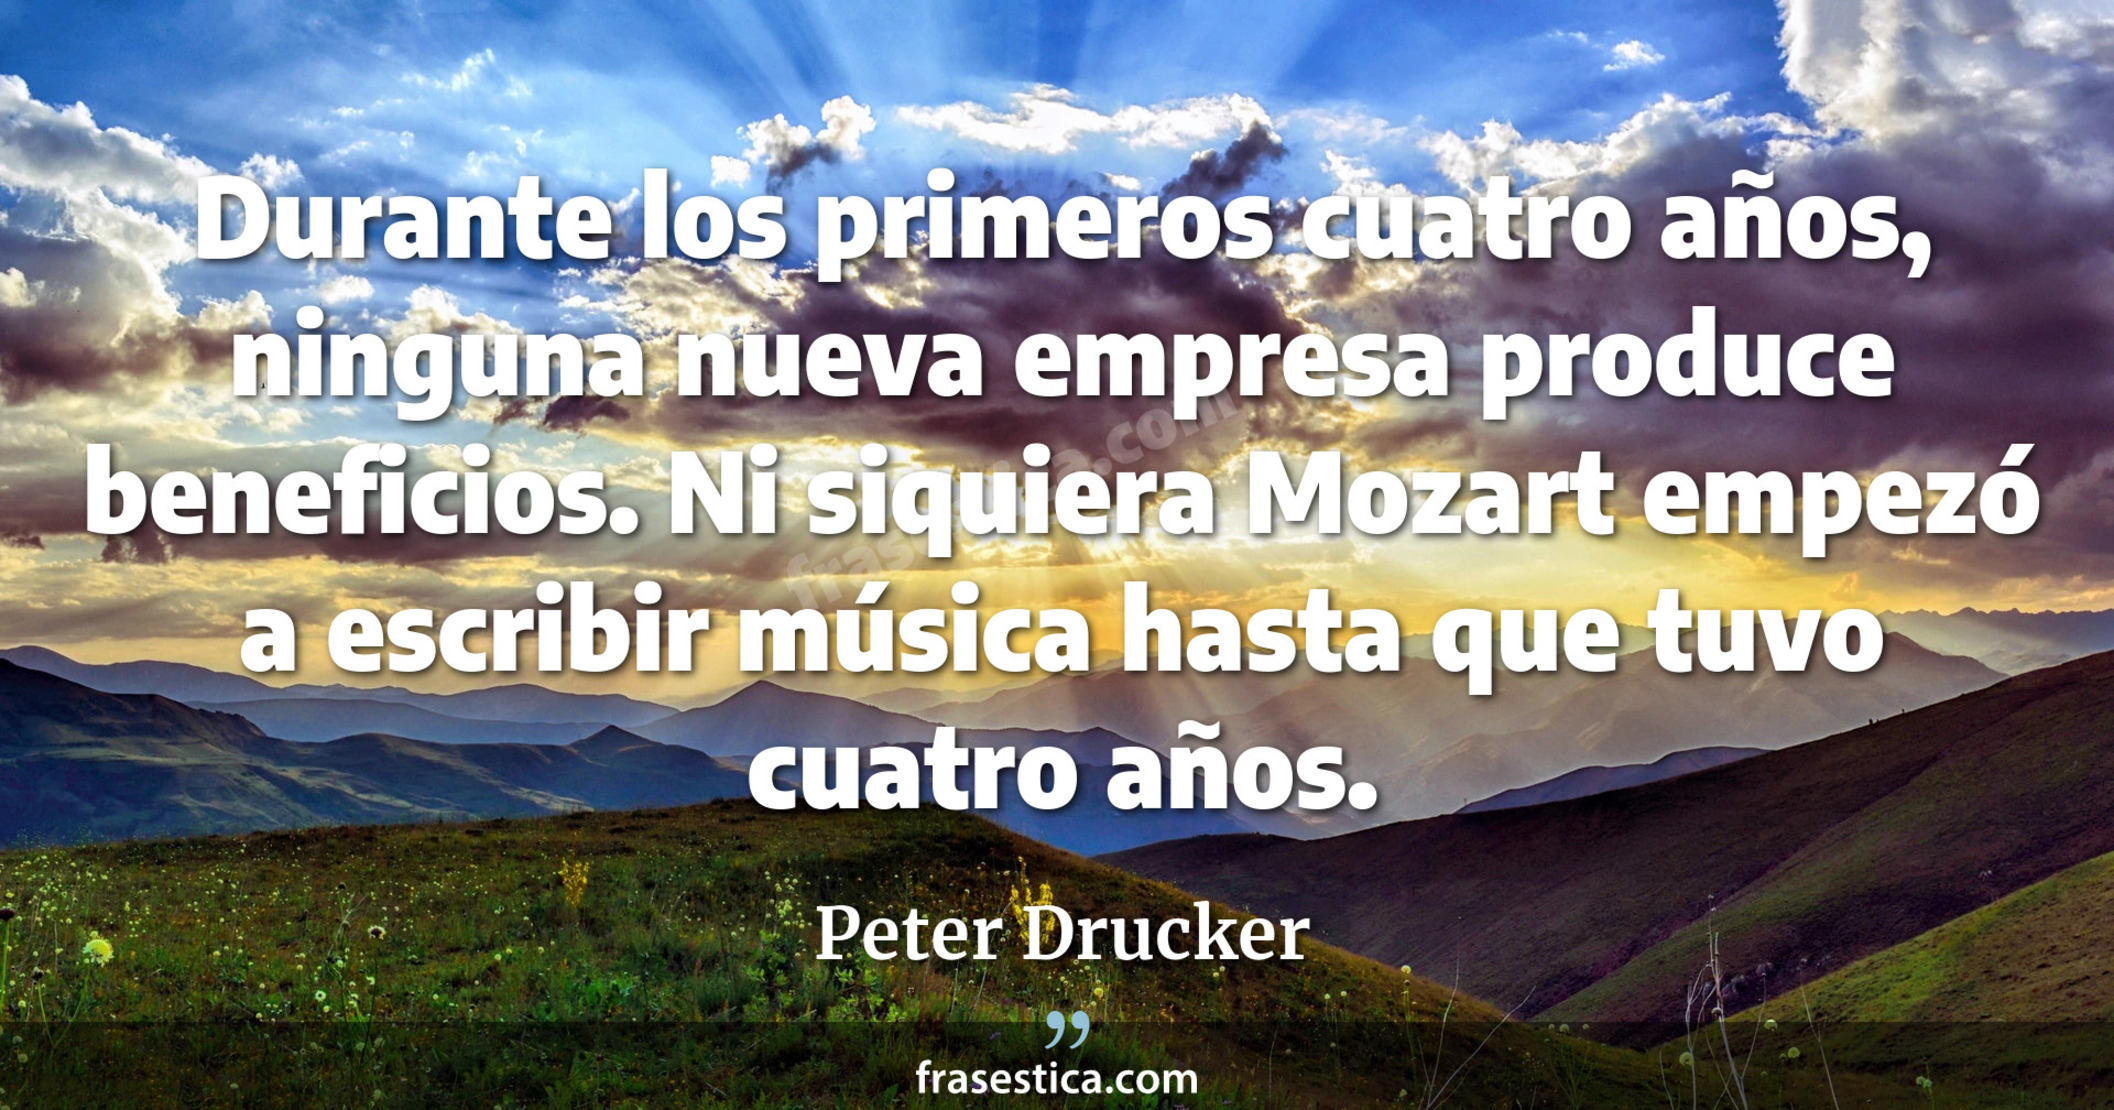 Durante los primeros cuatro años, ninguna nueva empresa produce beneficios. Ni siquiera Mozart empezó a escribir música hasta que tuvo cuatro años. - Peter Drucker